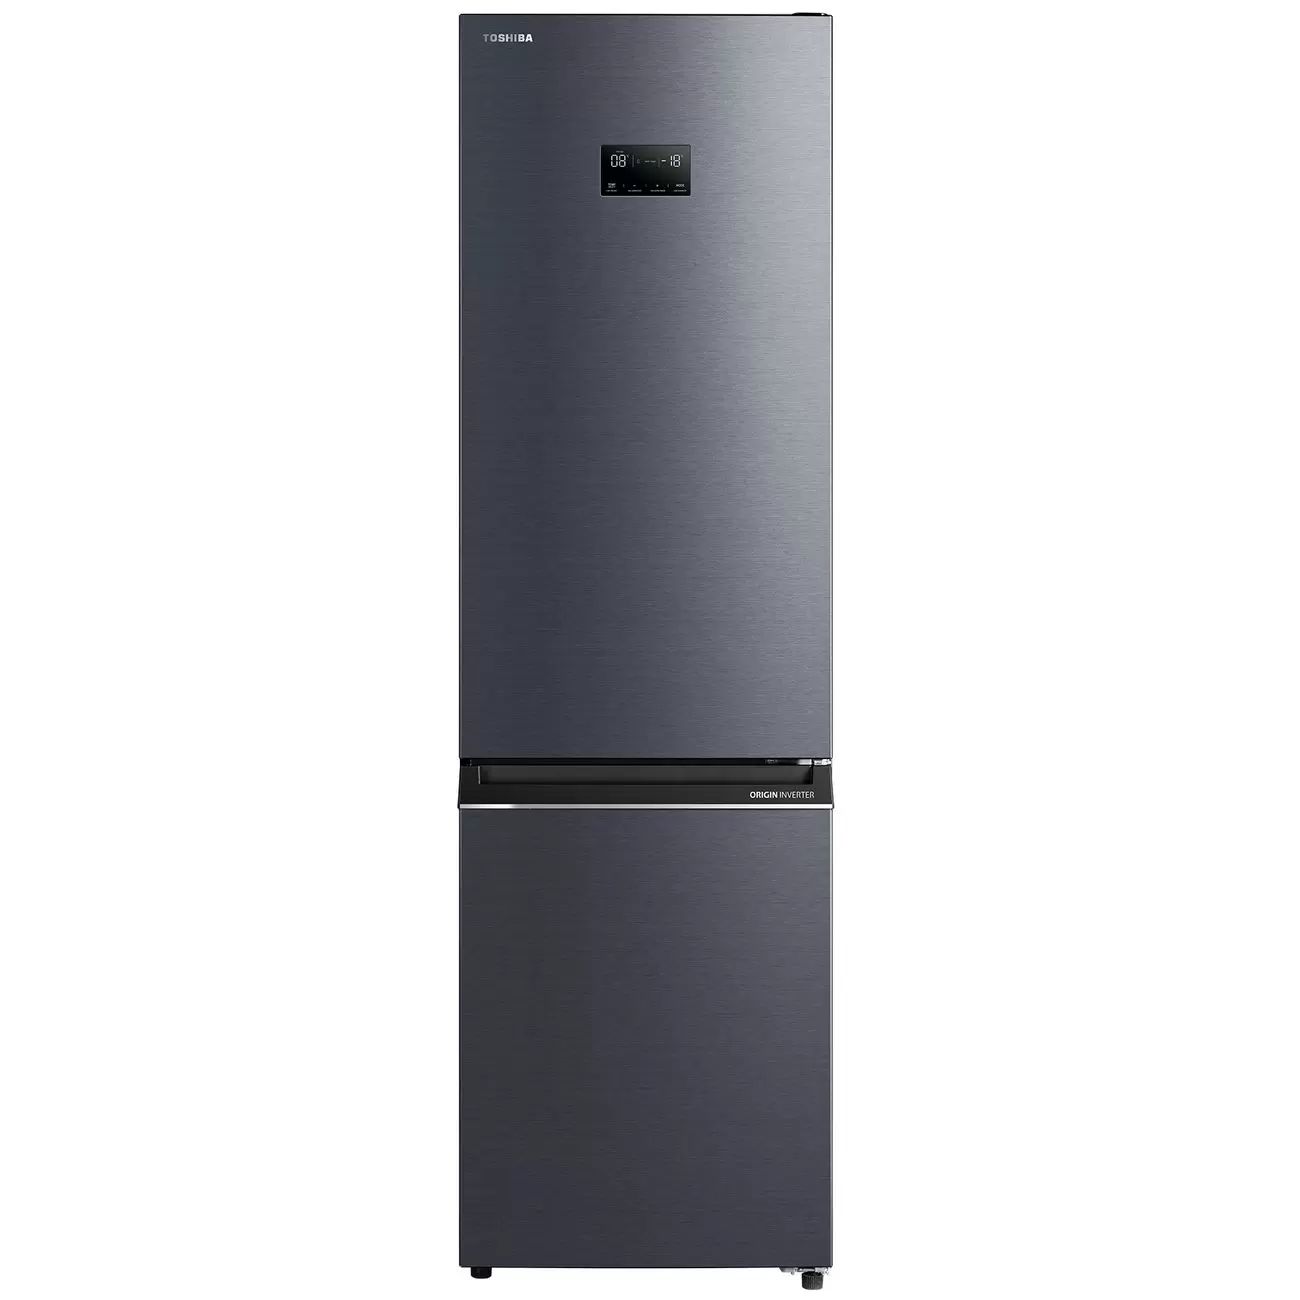 Холодильник Toshiba GR-RB500WE-PMJ серый, купить в Москве, цены в интернет-магазинах на Мегамаркет